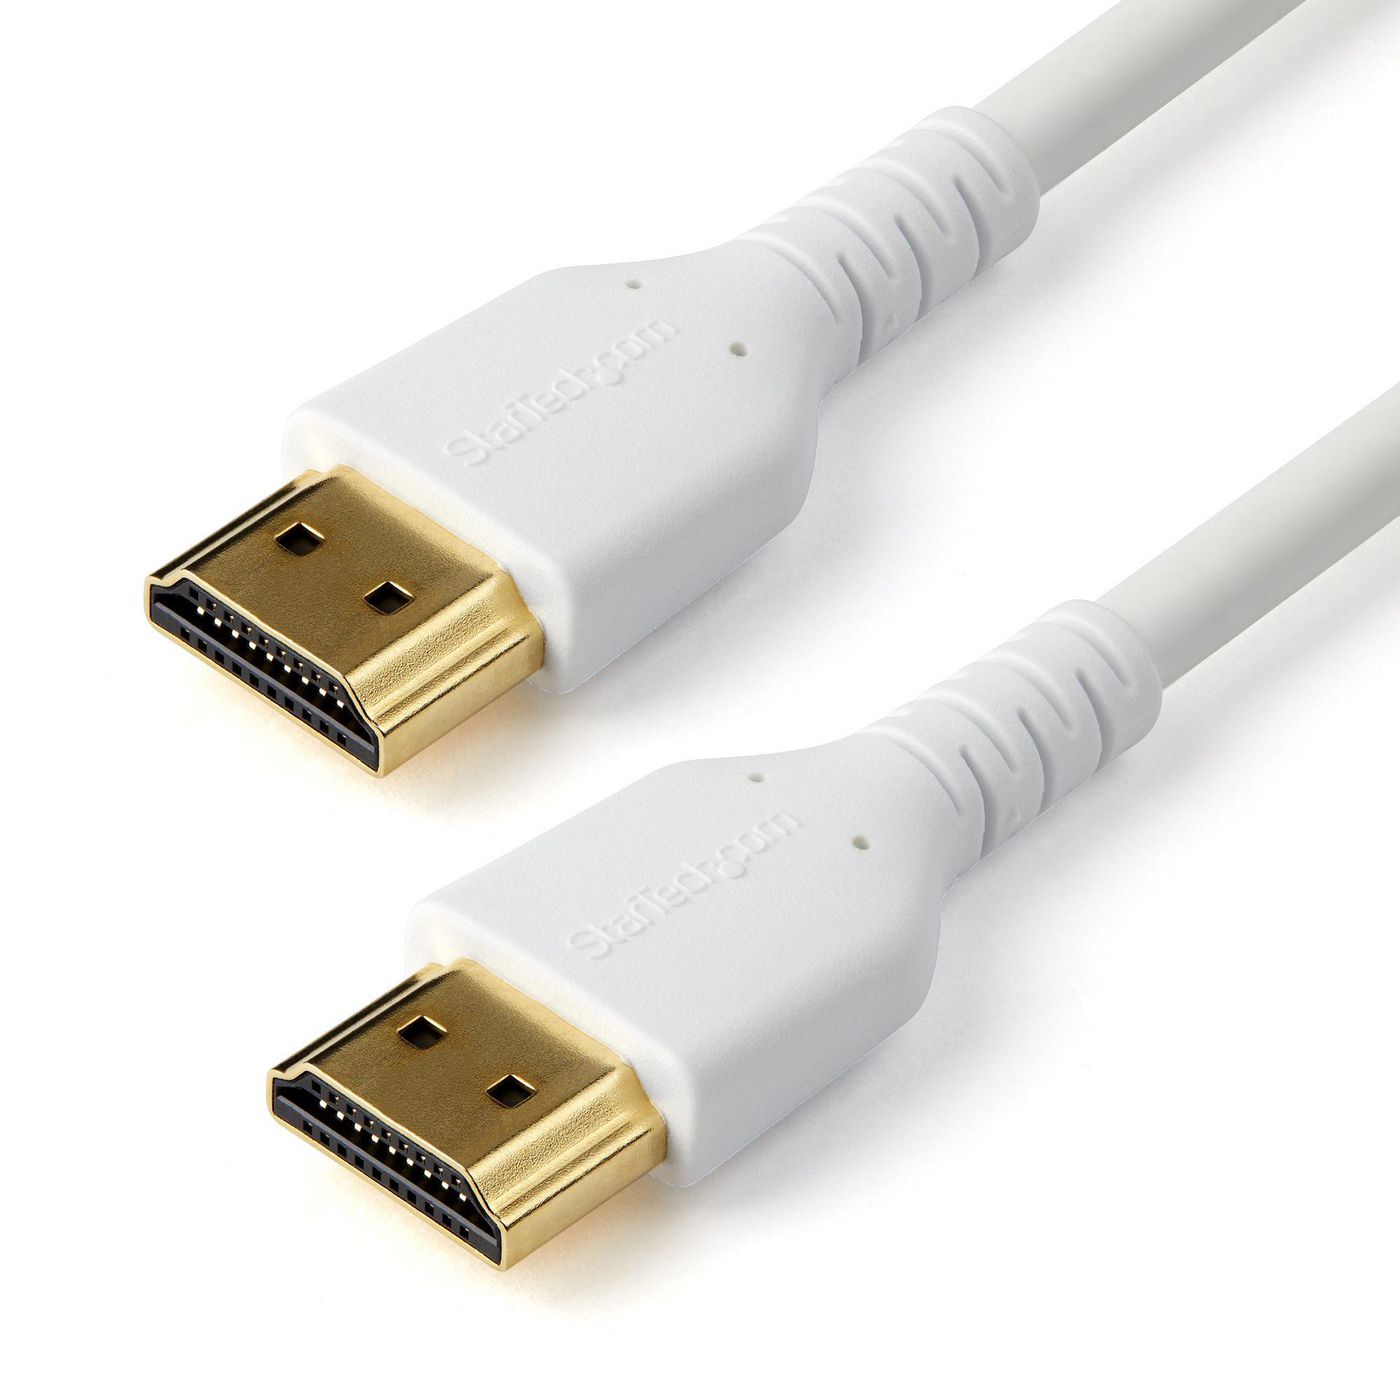 STARTECH.COM Premium High Speed HDMI Kabel mit Ethernet - 1m weisses robustes HDMI Kabel - 4k 60Hz